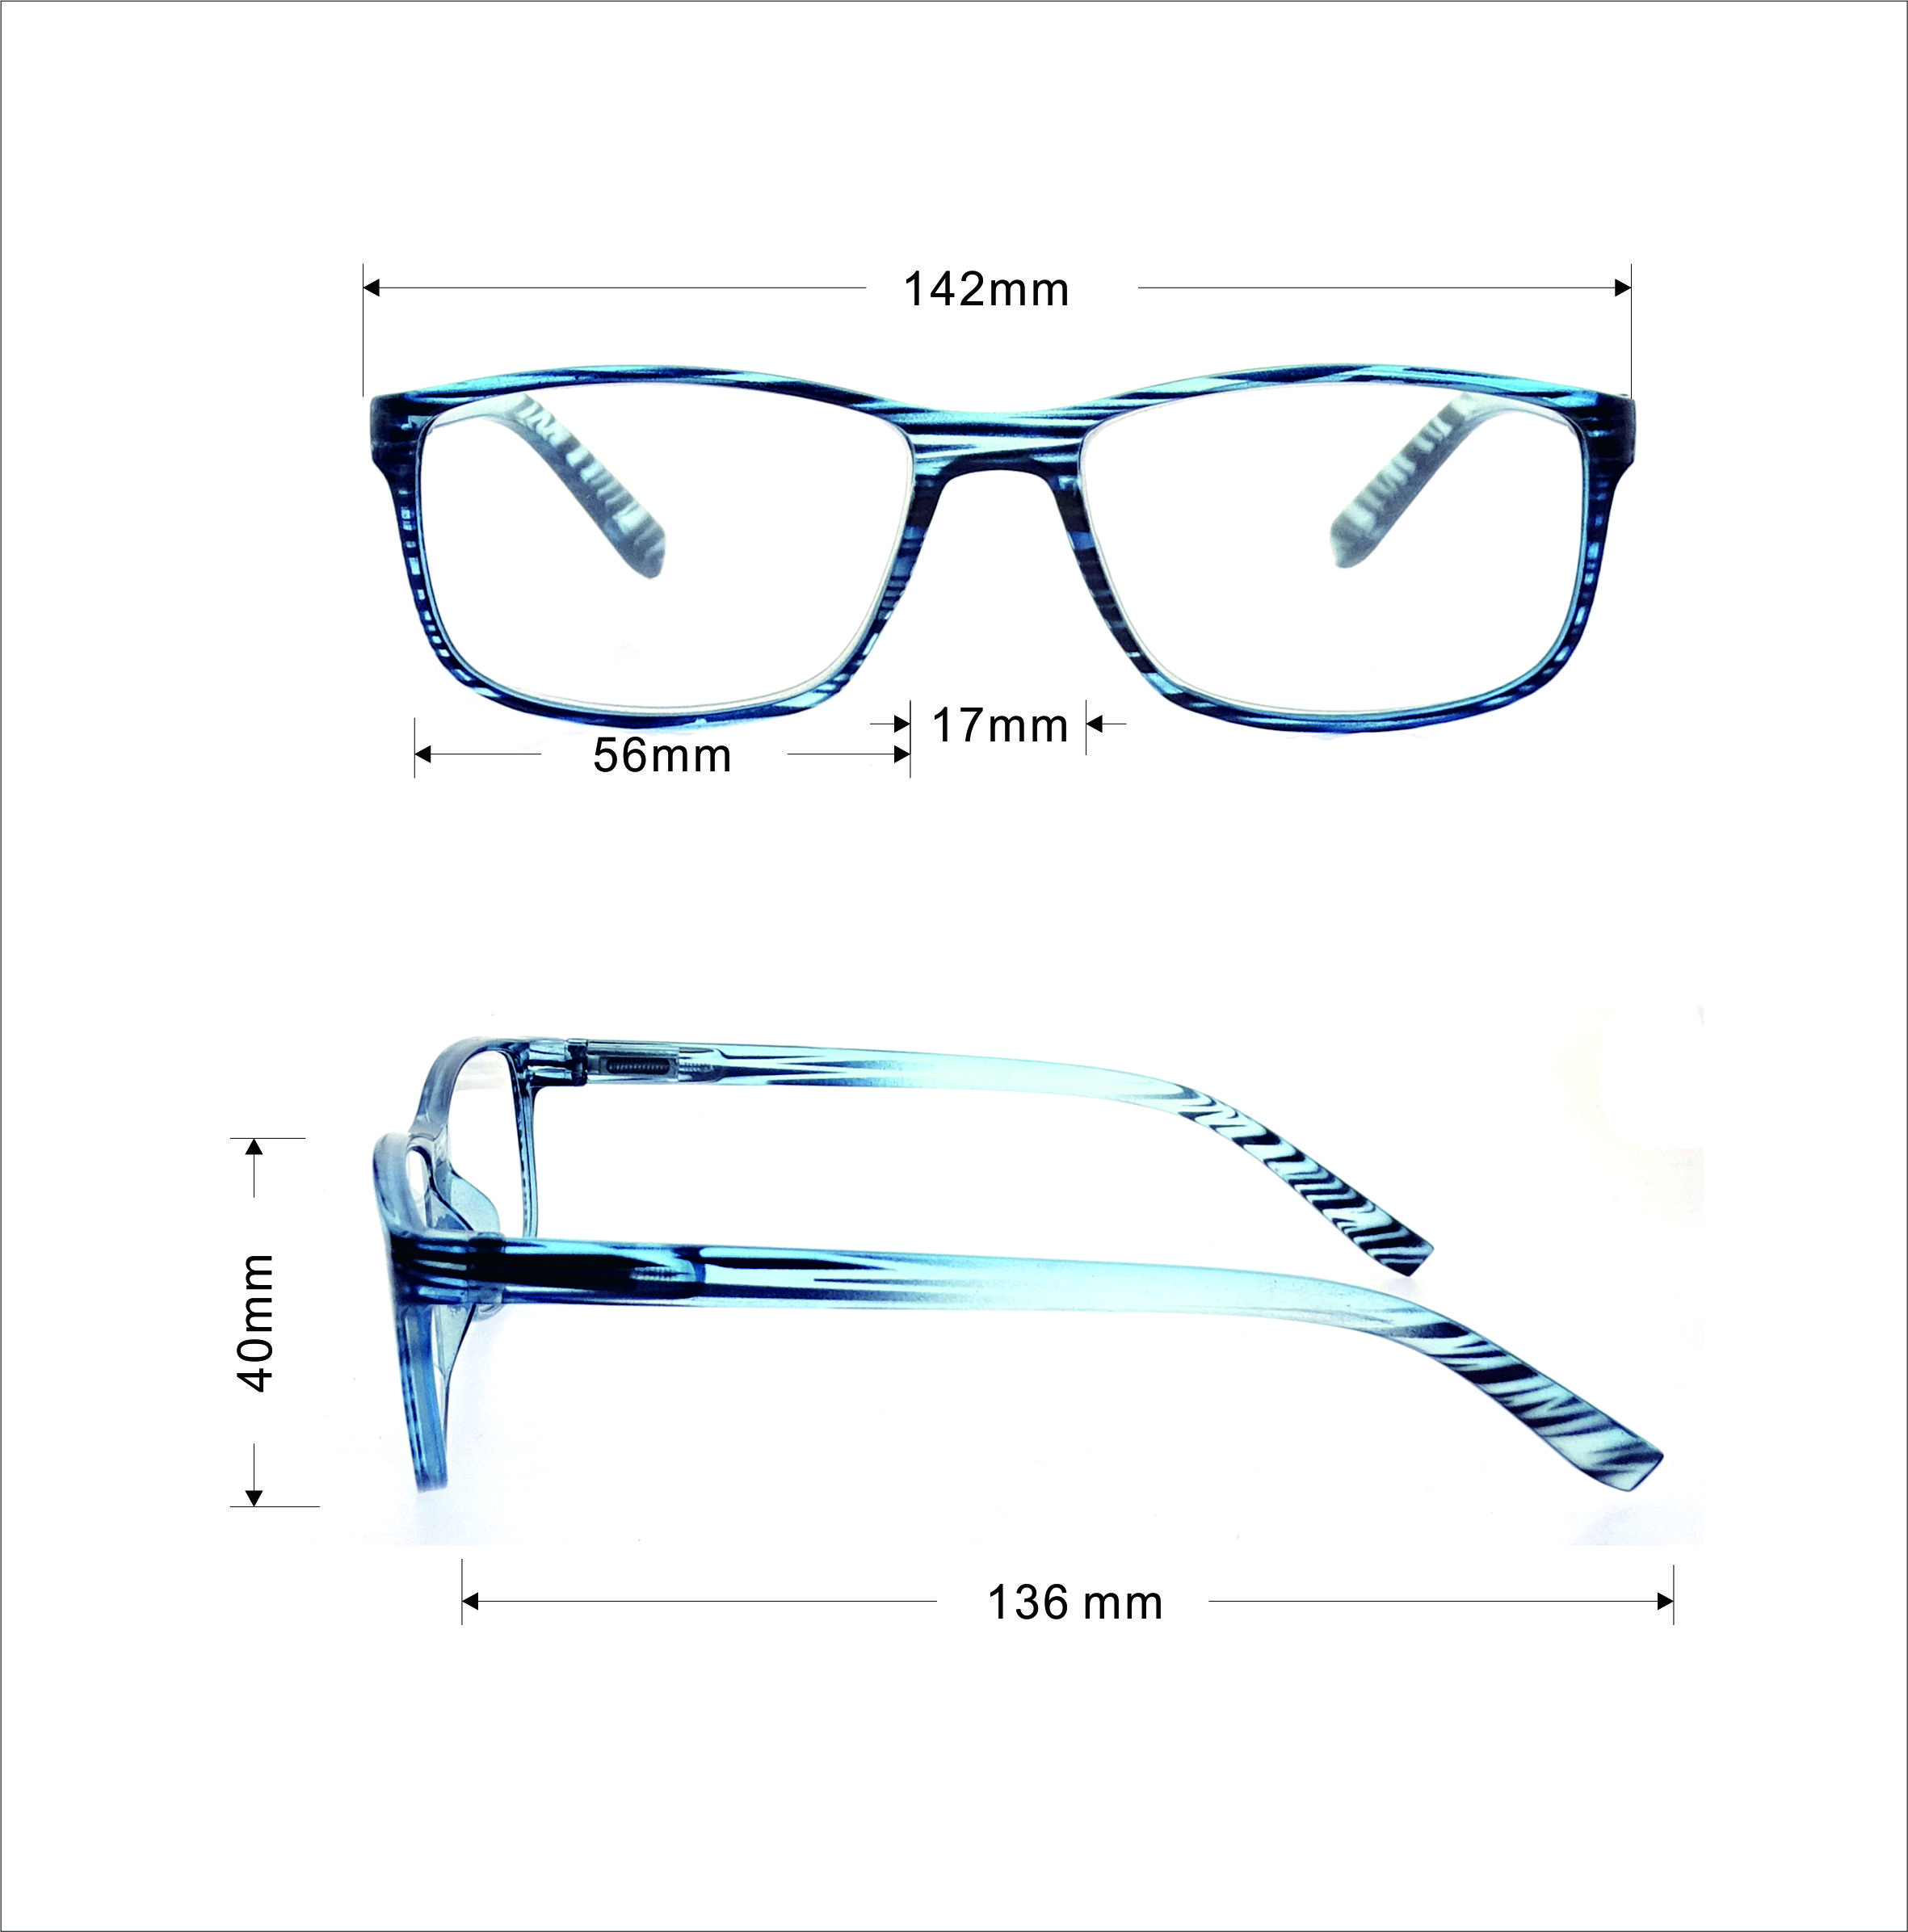 Marco óptico circular de gafas de alta calidad para el ocio LR-P5619